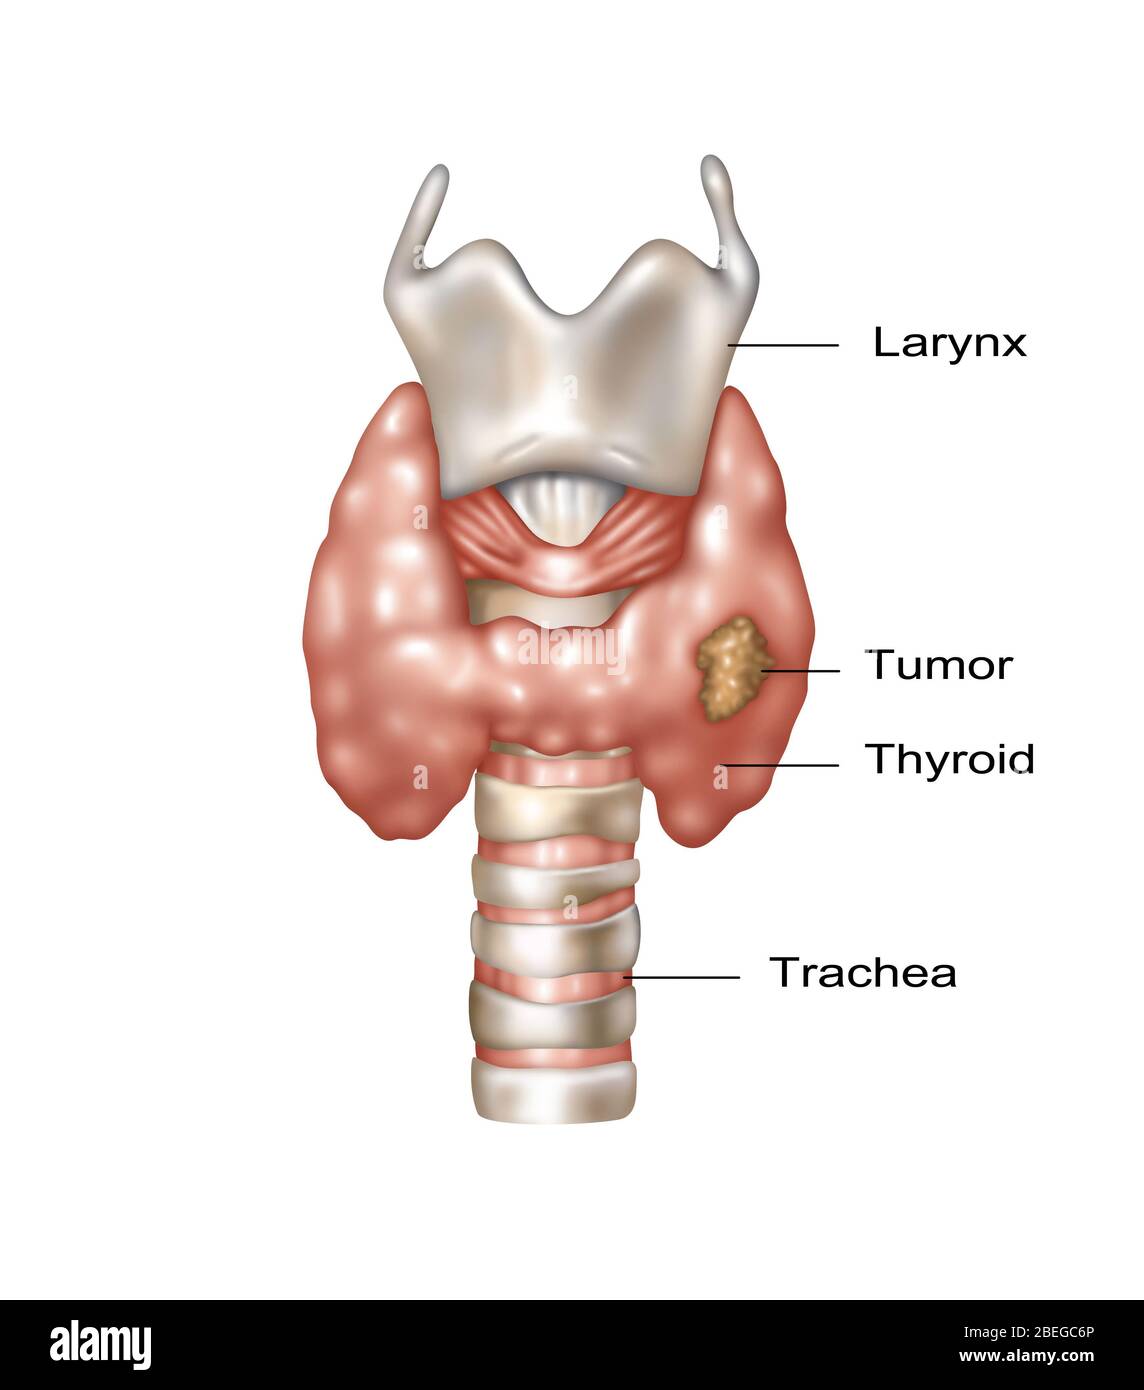 Abbildung zeigt die Lage von Kehlkopf, Schilddrüse und Luftröhre. Im unteren rechten Bereich der Schilddrüse ist ein bösartiges Wachstum zu beobachten. Stockfoto